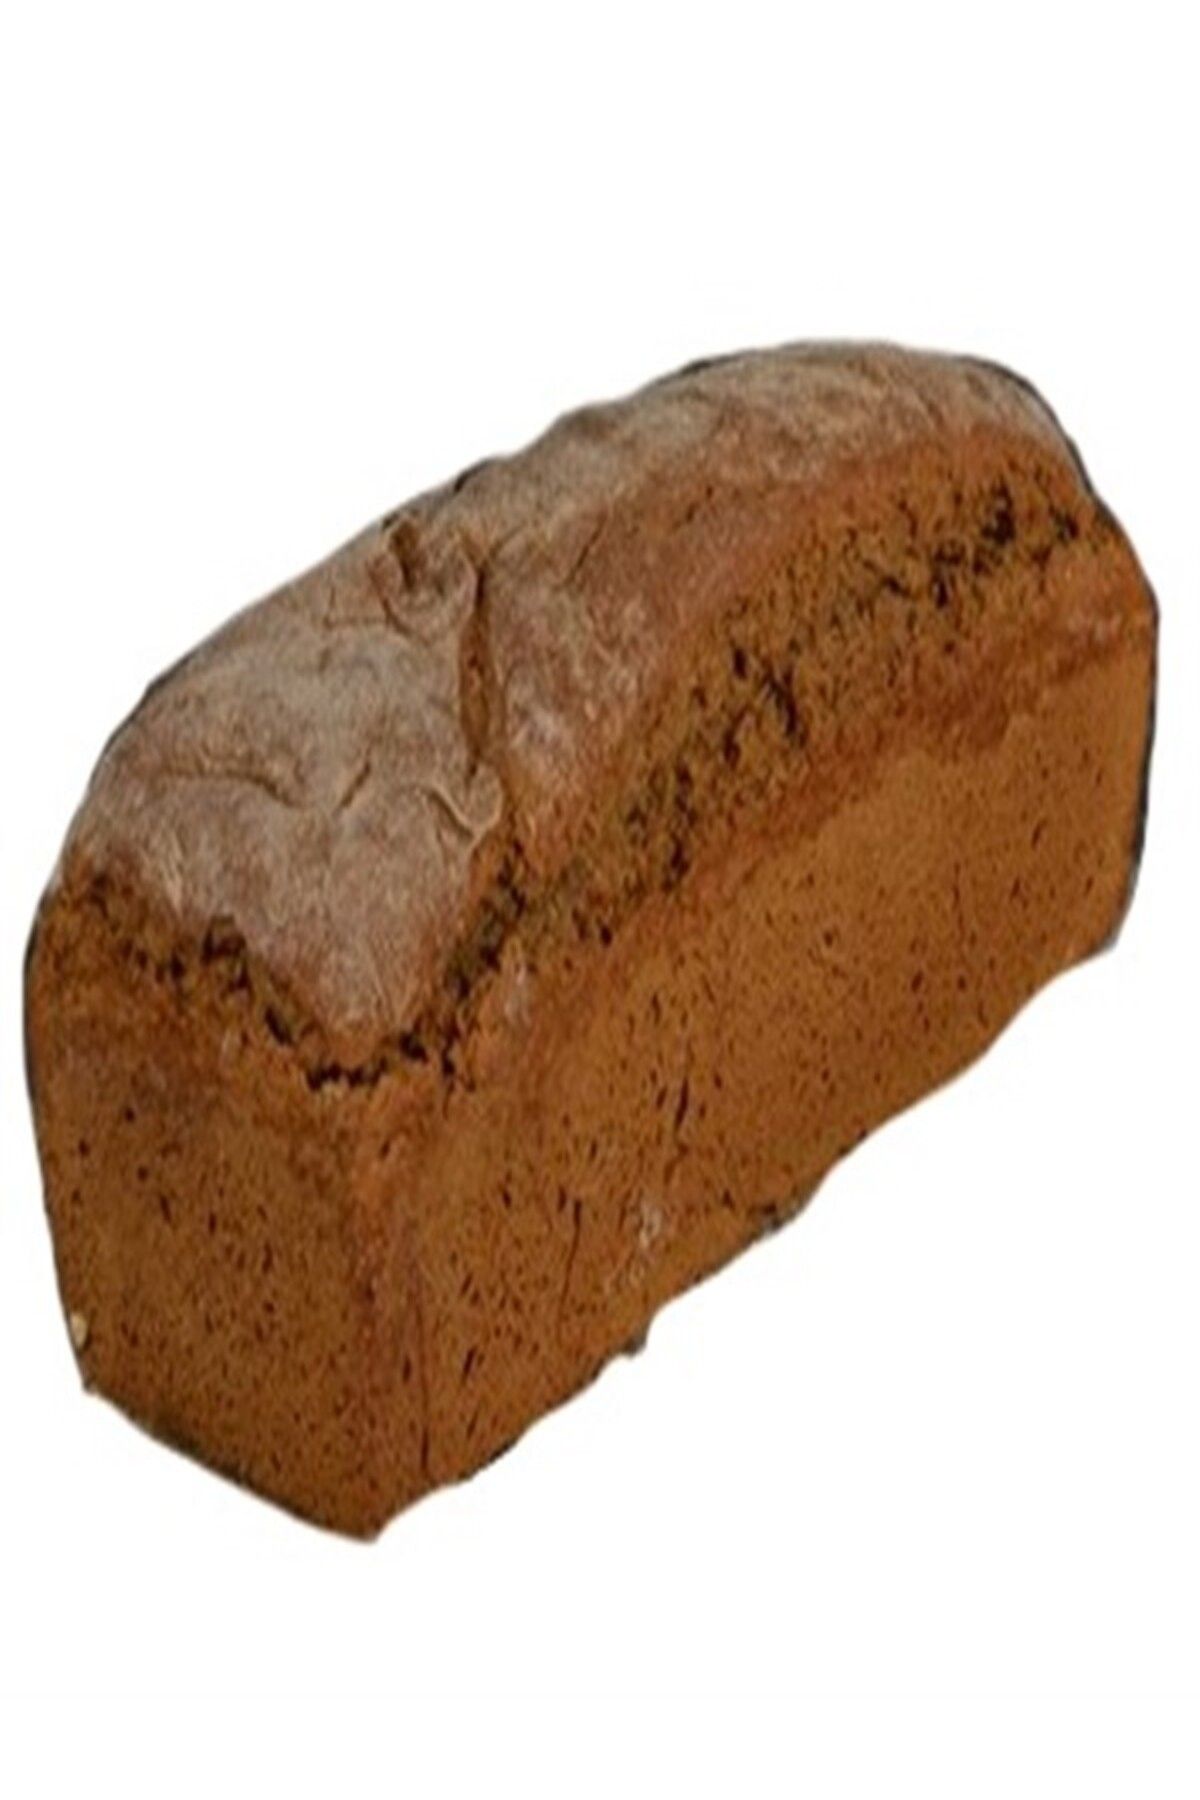 MAYA DOĞAL ÜRÜNLER Tam Çavdar Ekmeği Ekşi Mayalı 900gr